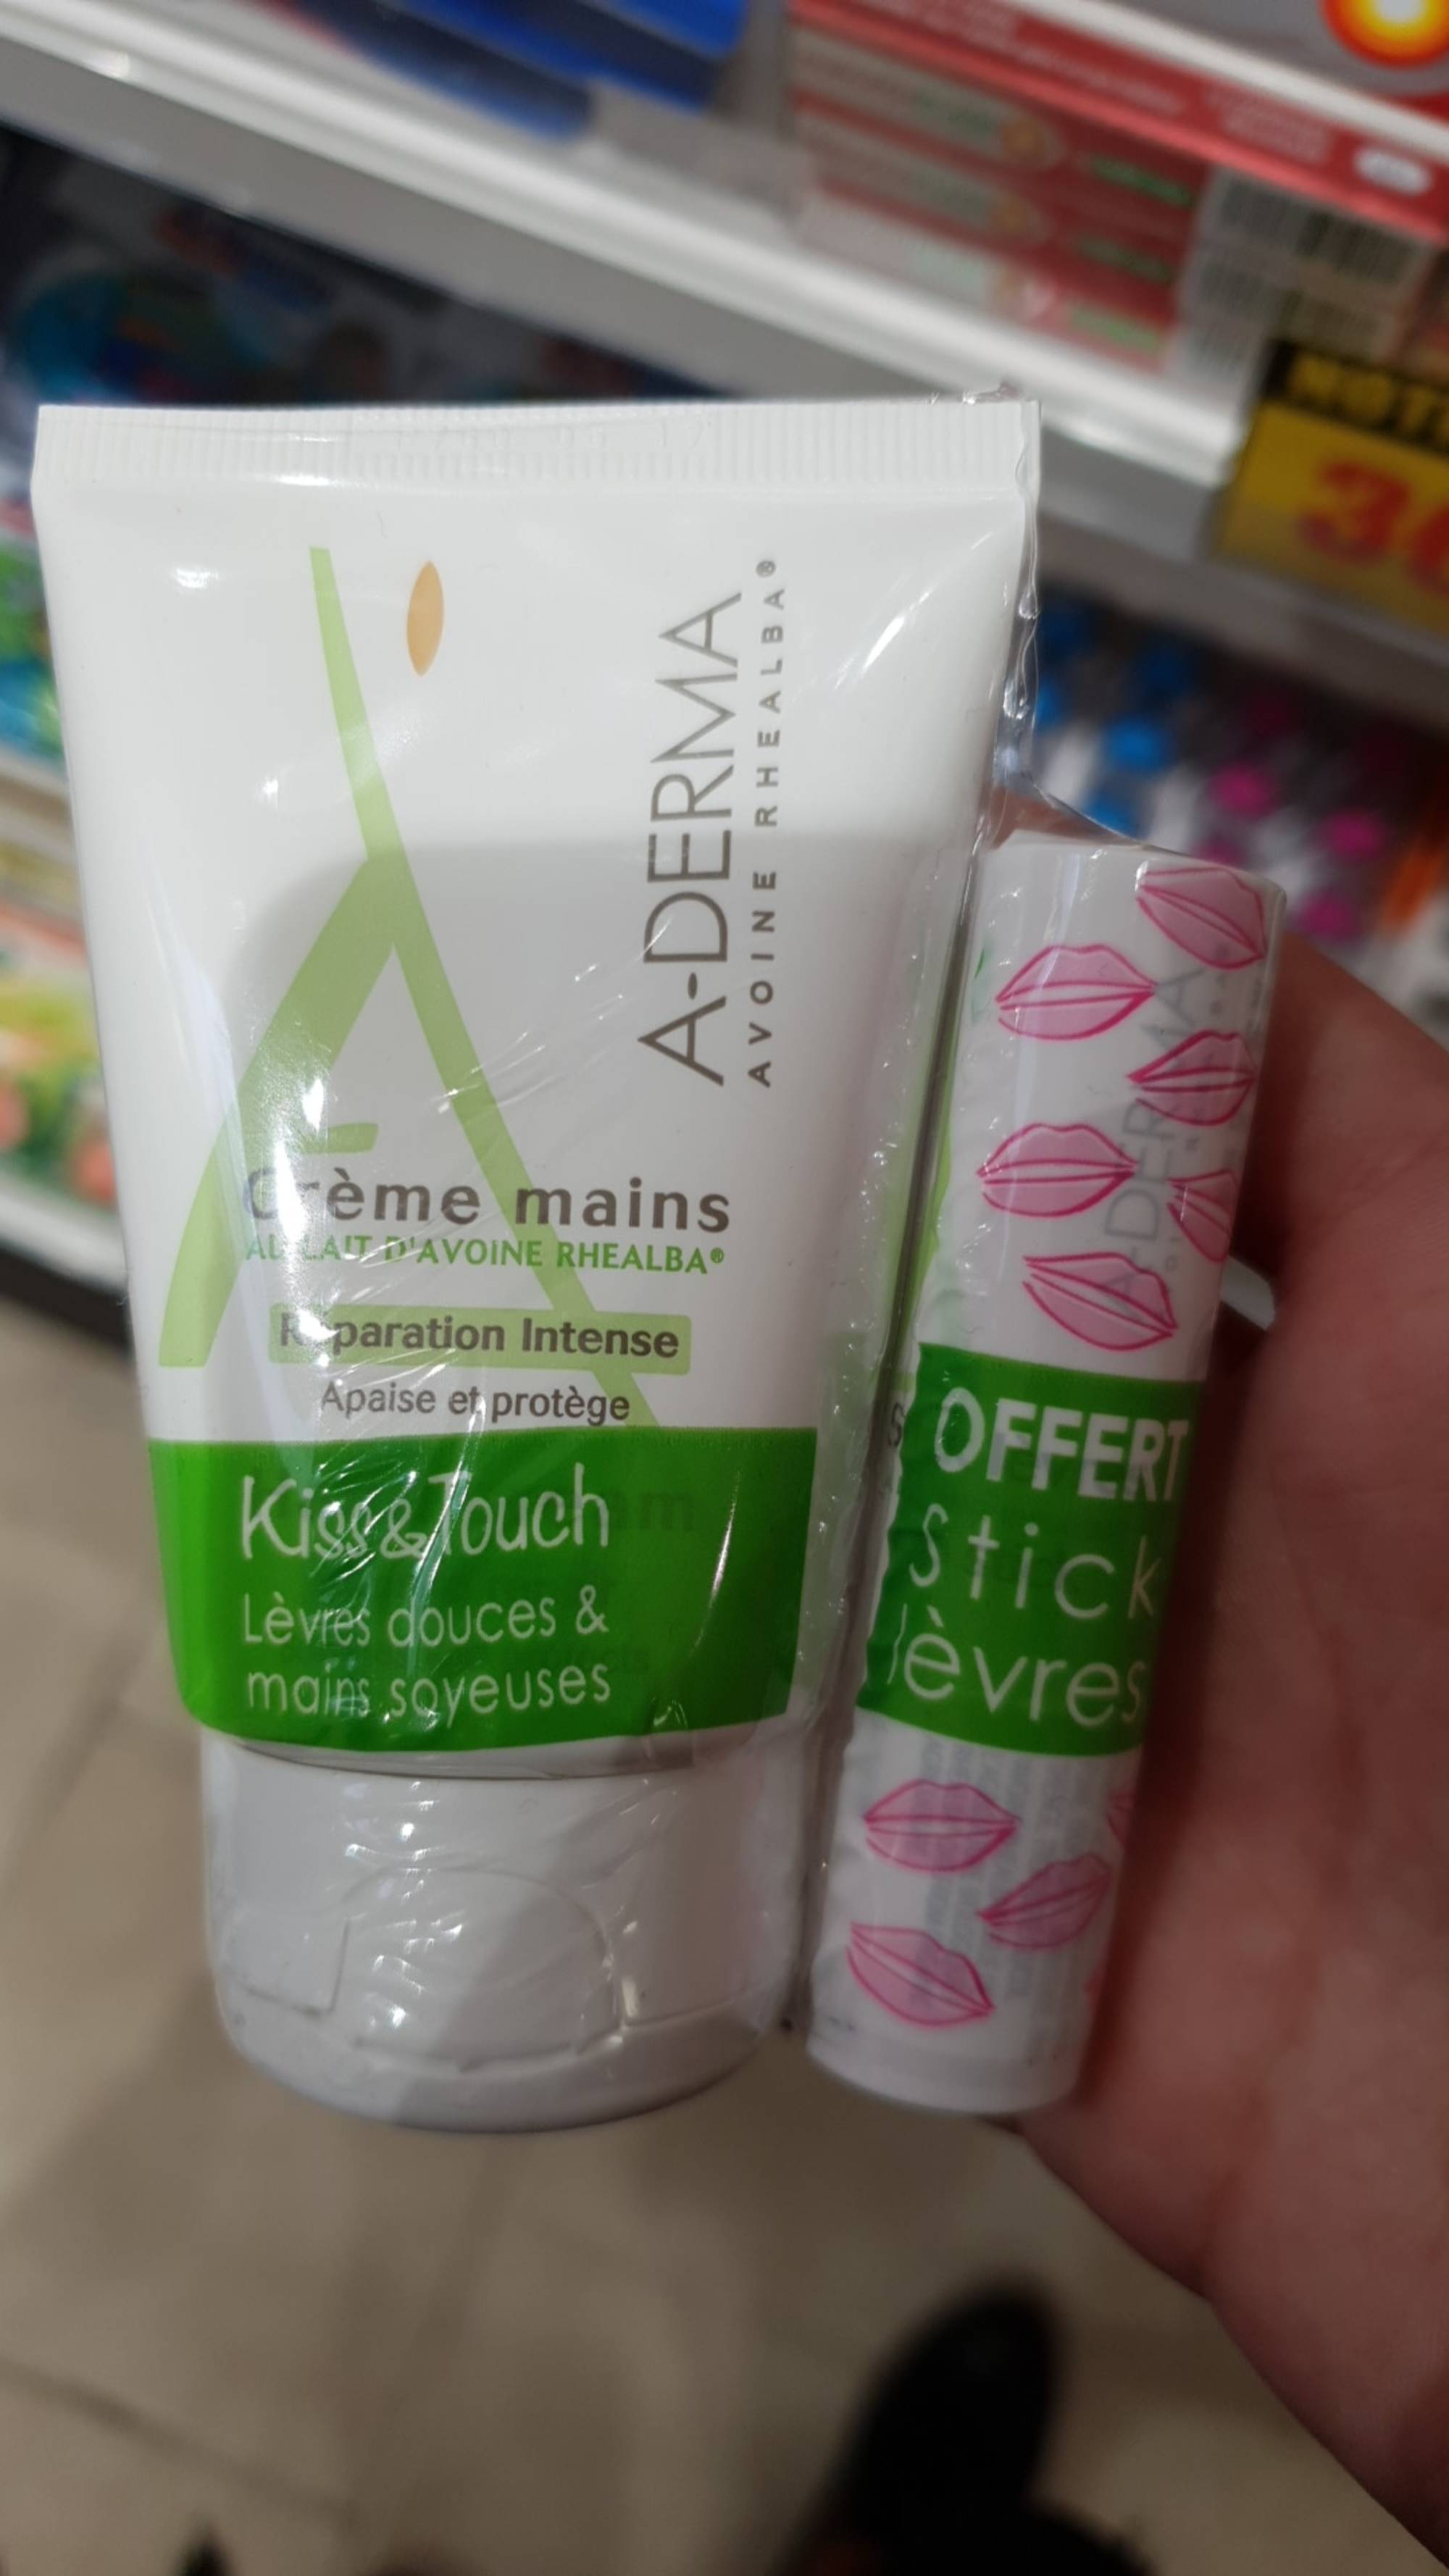 A-DERMA - Kiss & touch - Crème mains et stick lèvres